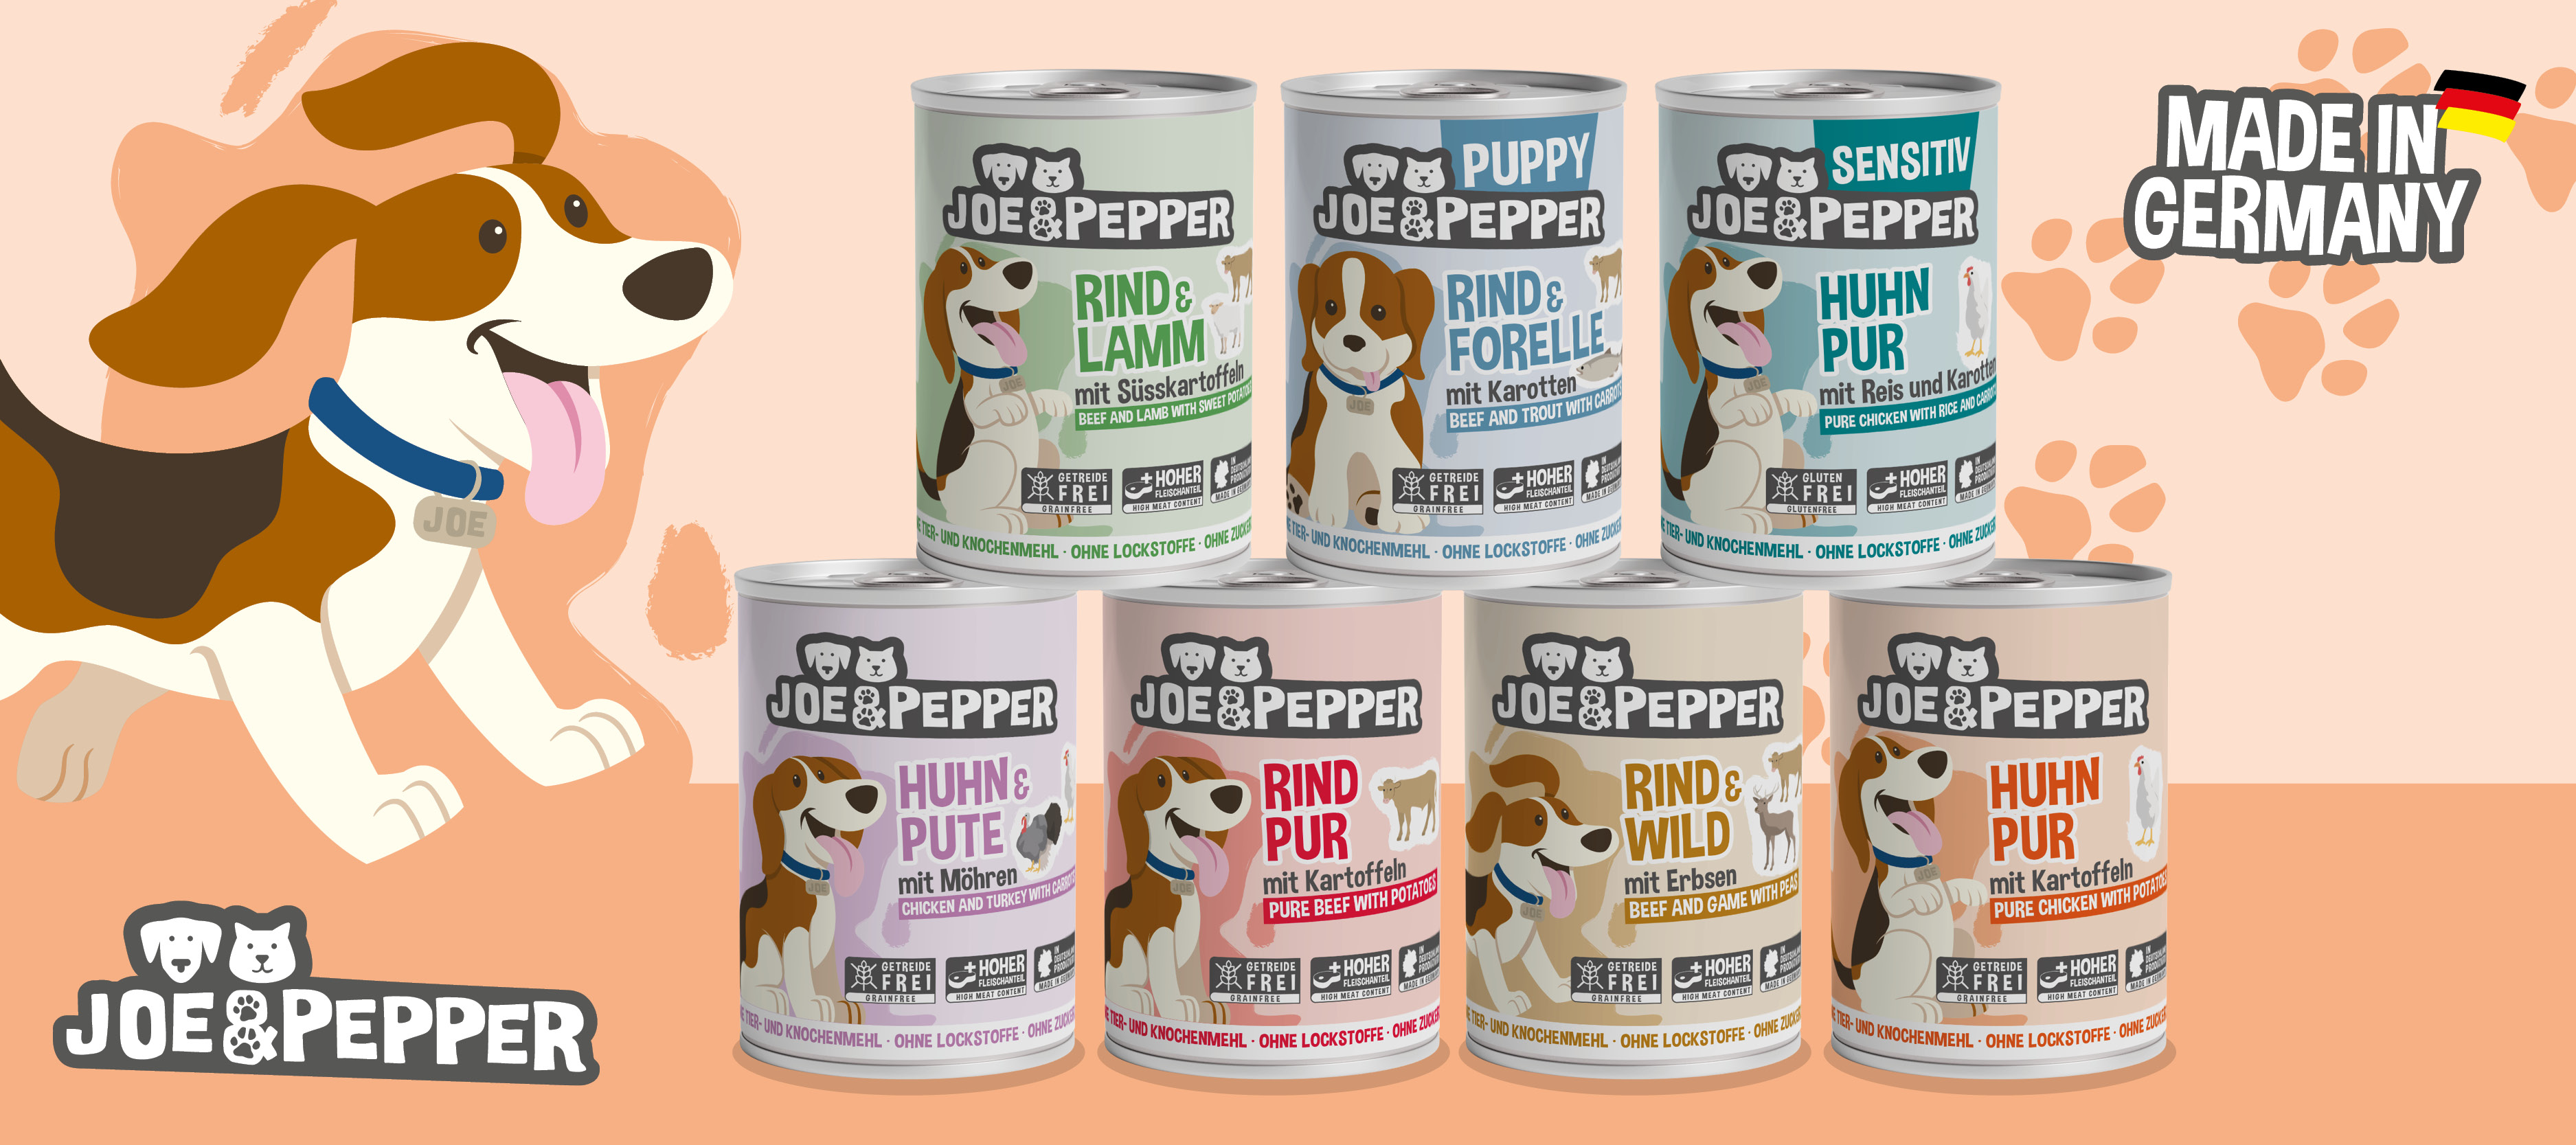 Joe & Pepper Hund - Das komplette Sortiment bei uns!